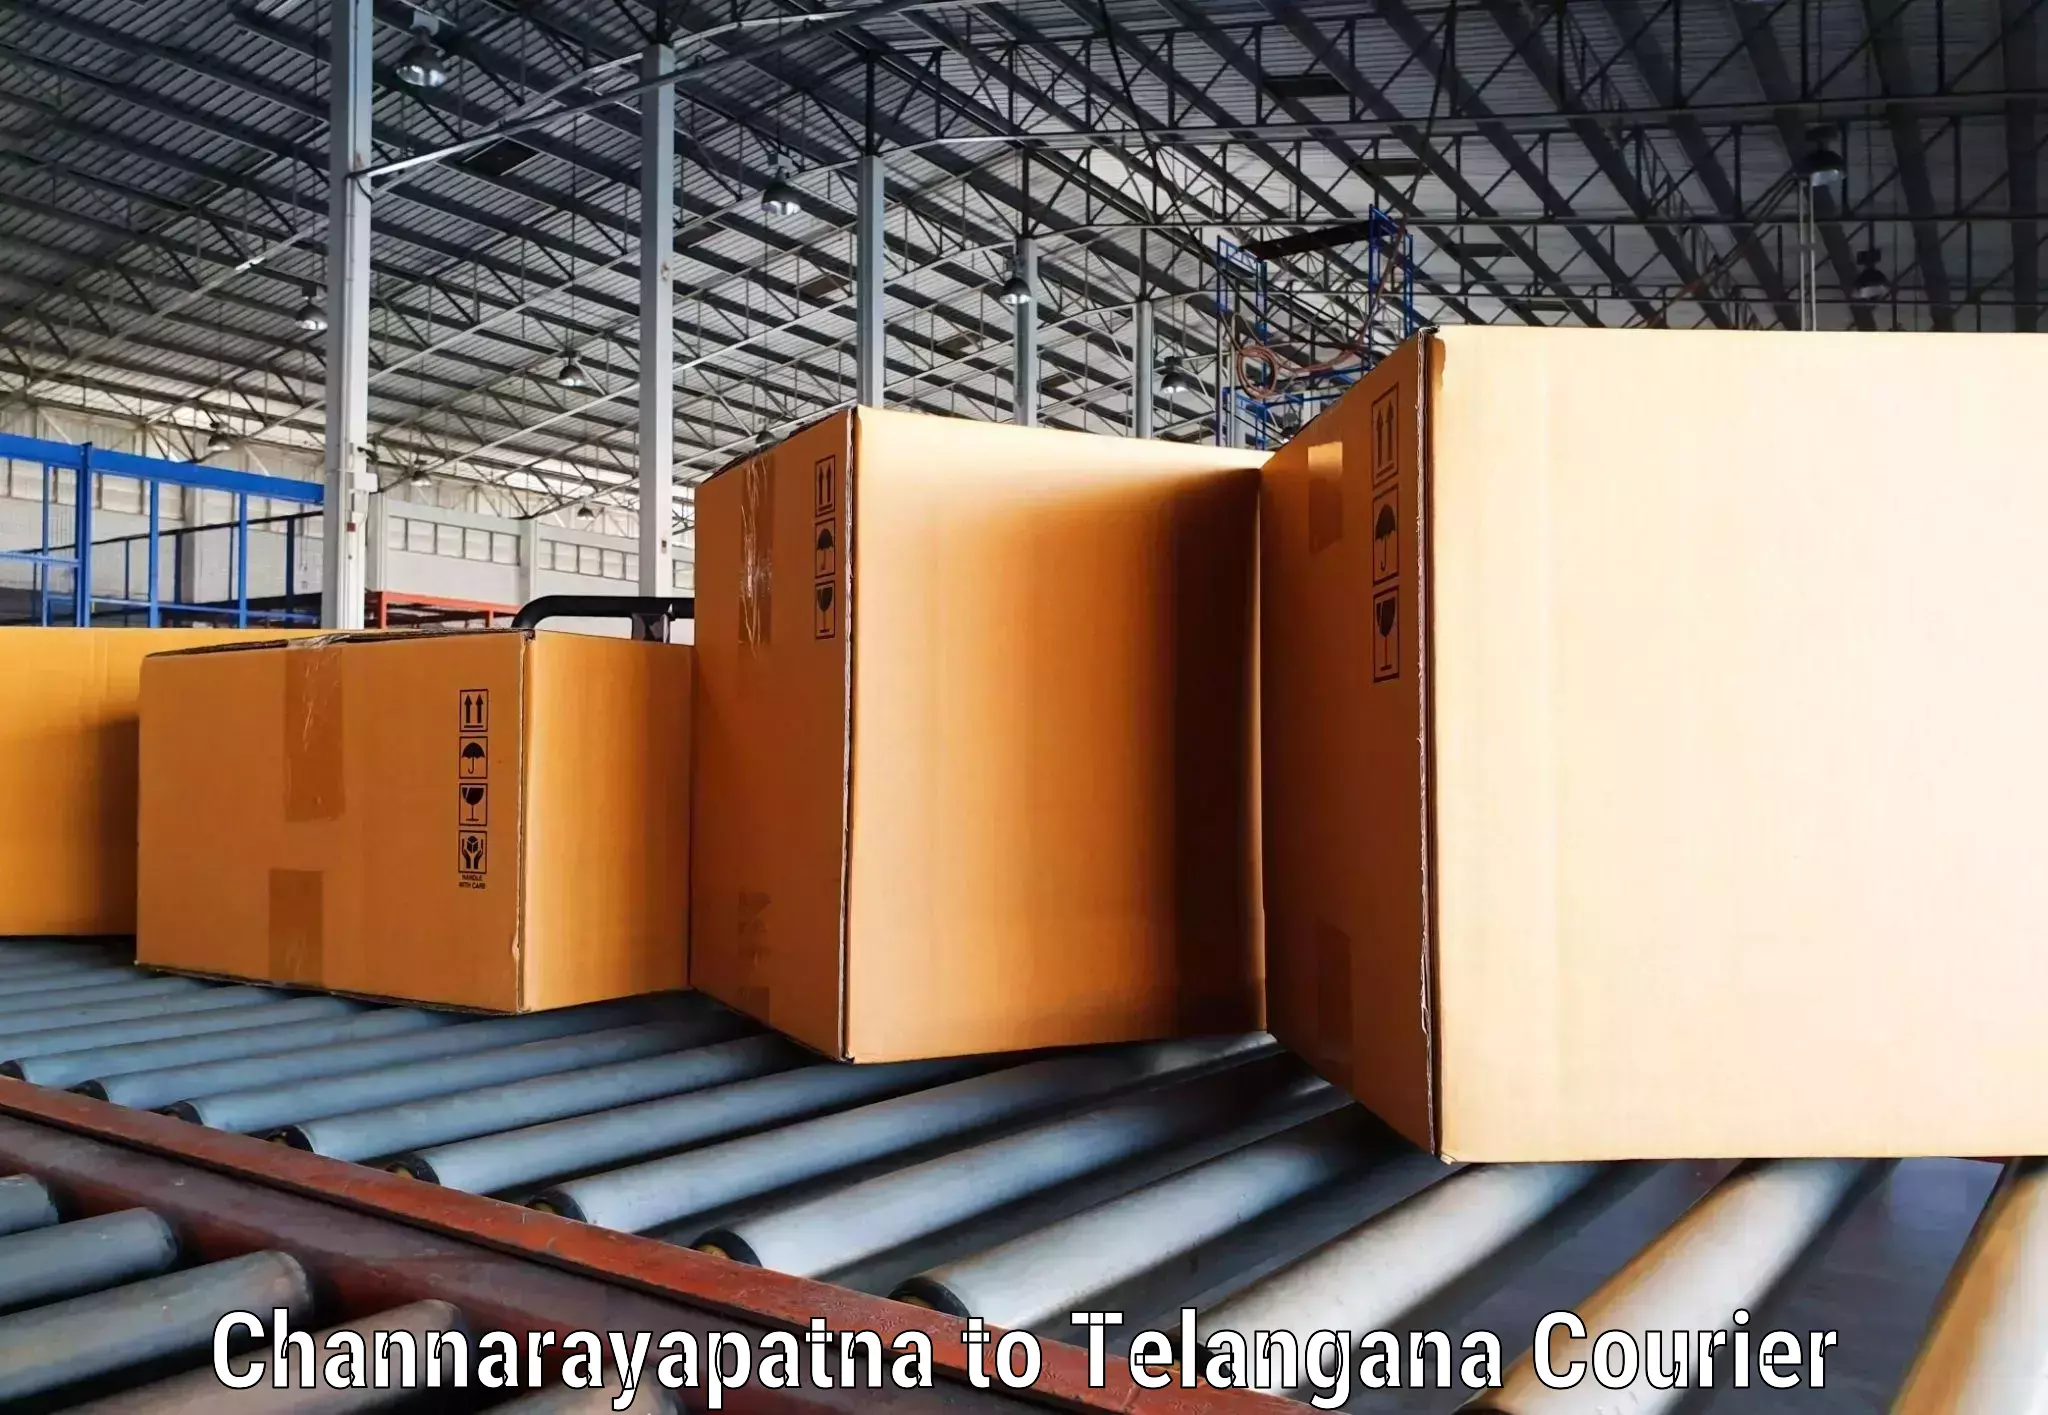 Flexible delivery schedules Channarayapatna to Yellandu